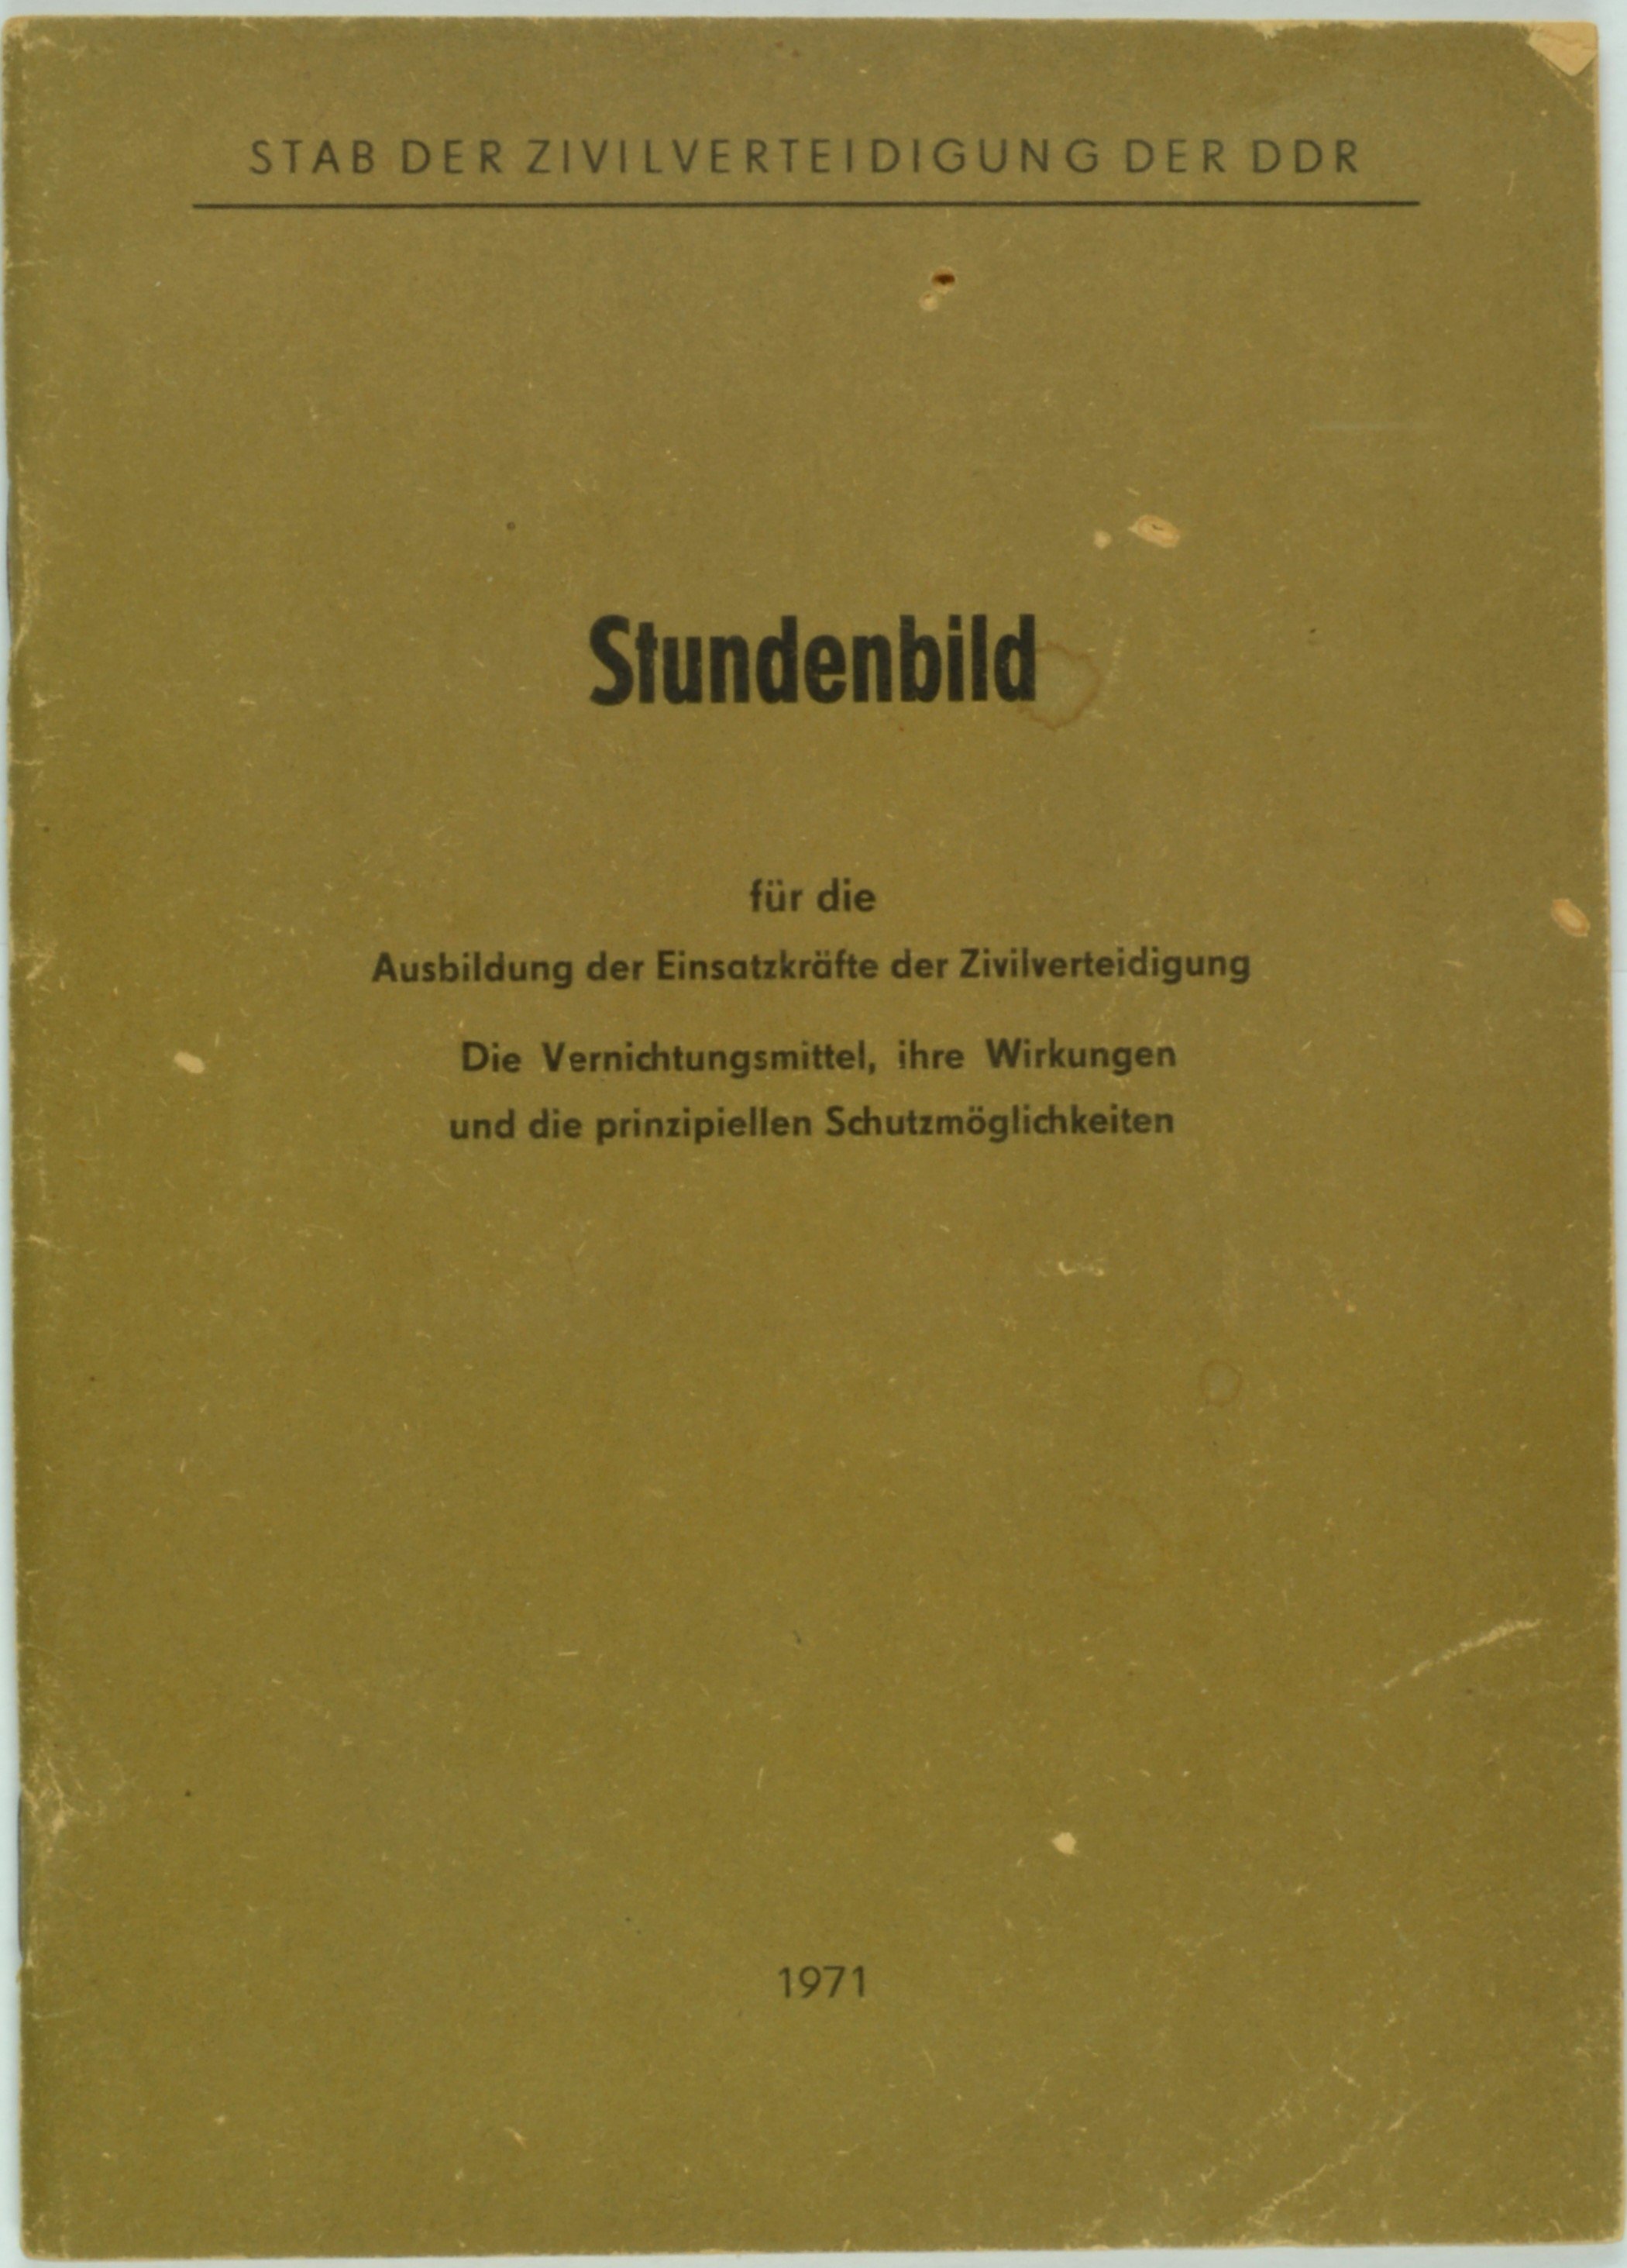 Broschüre "Stundenbild für die Ausbildung der Kräfte der Zivilverteidigung" (DDR Geschichtsmuseum im Dokumentationszentrum Perleberg CC BY-SA)